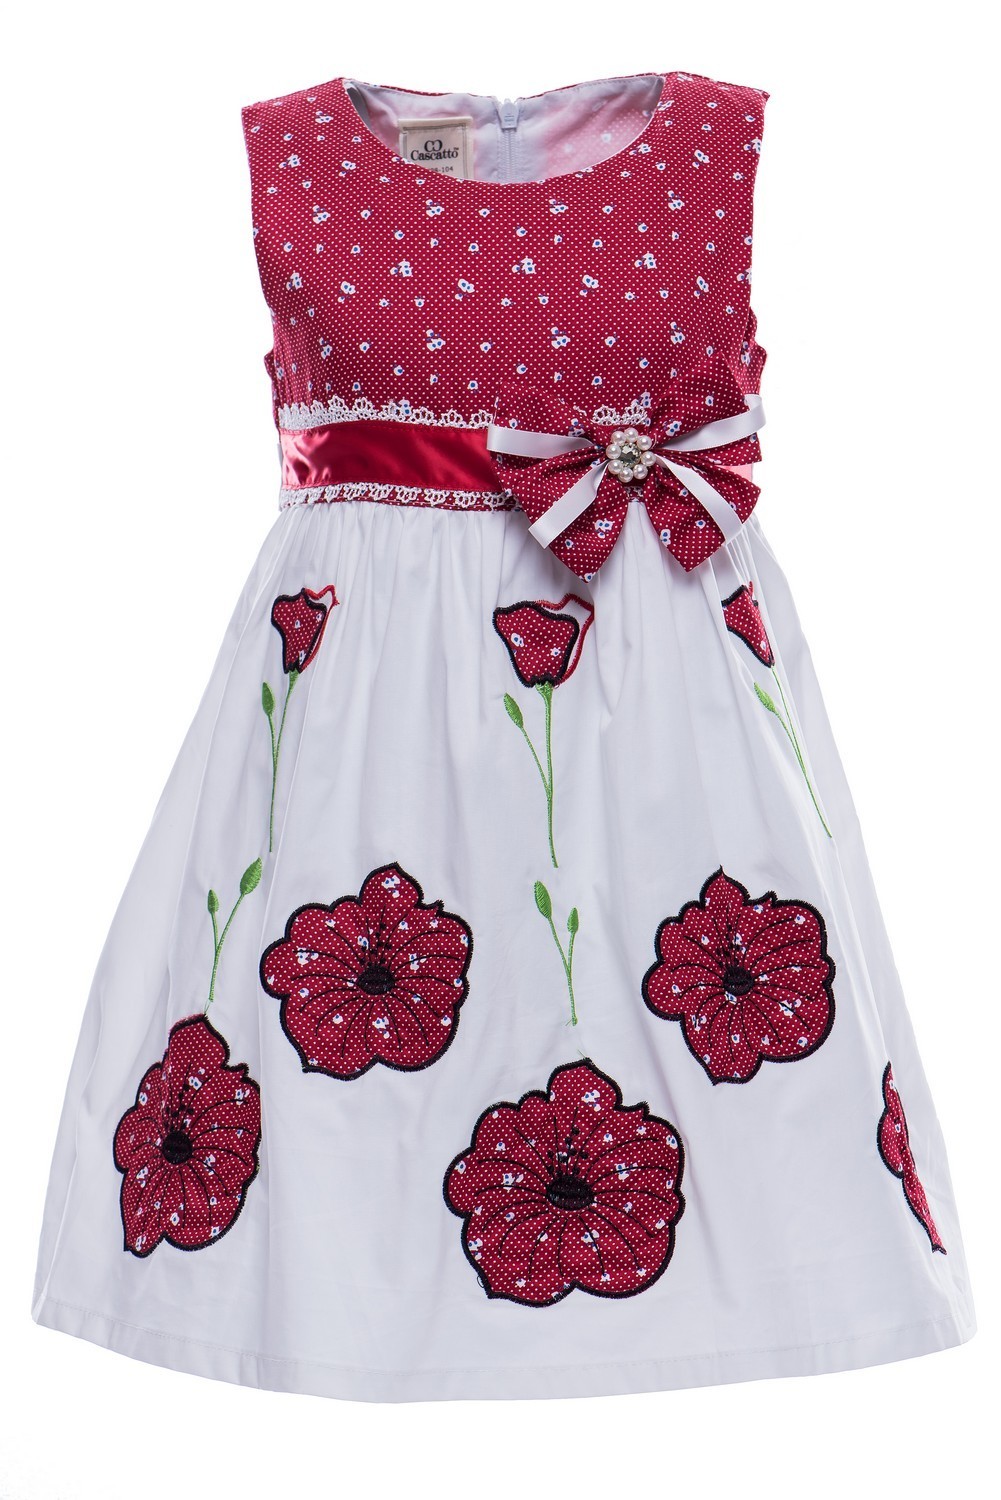 Купить Платье для девочки PL69 бело-красный